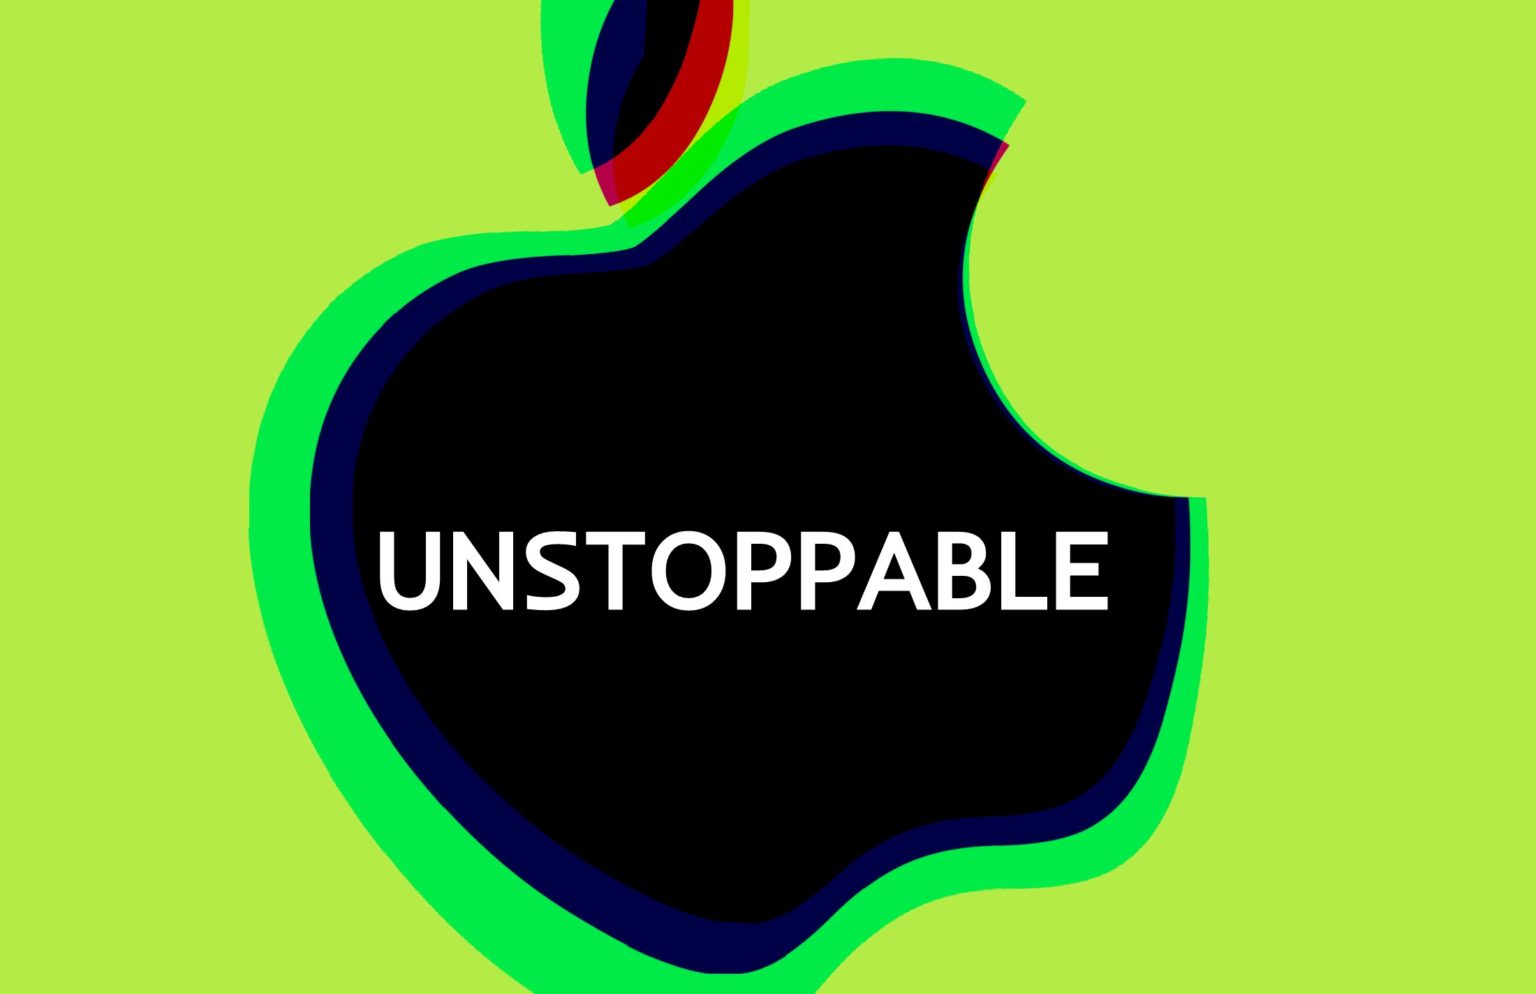 Apple Q2 2020 earnings call: Apple still looks unstoppable.